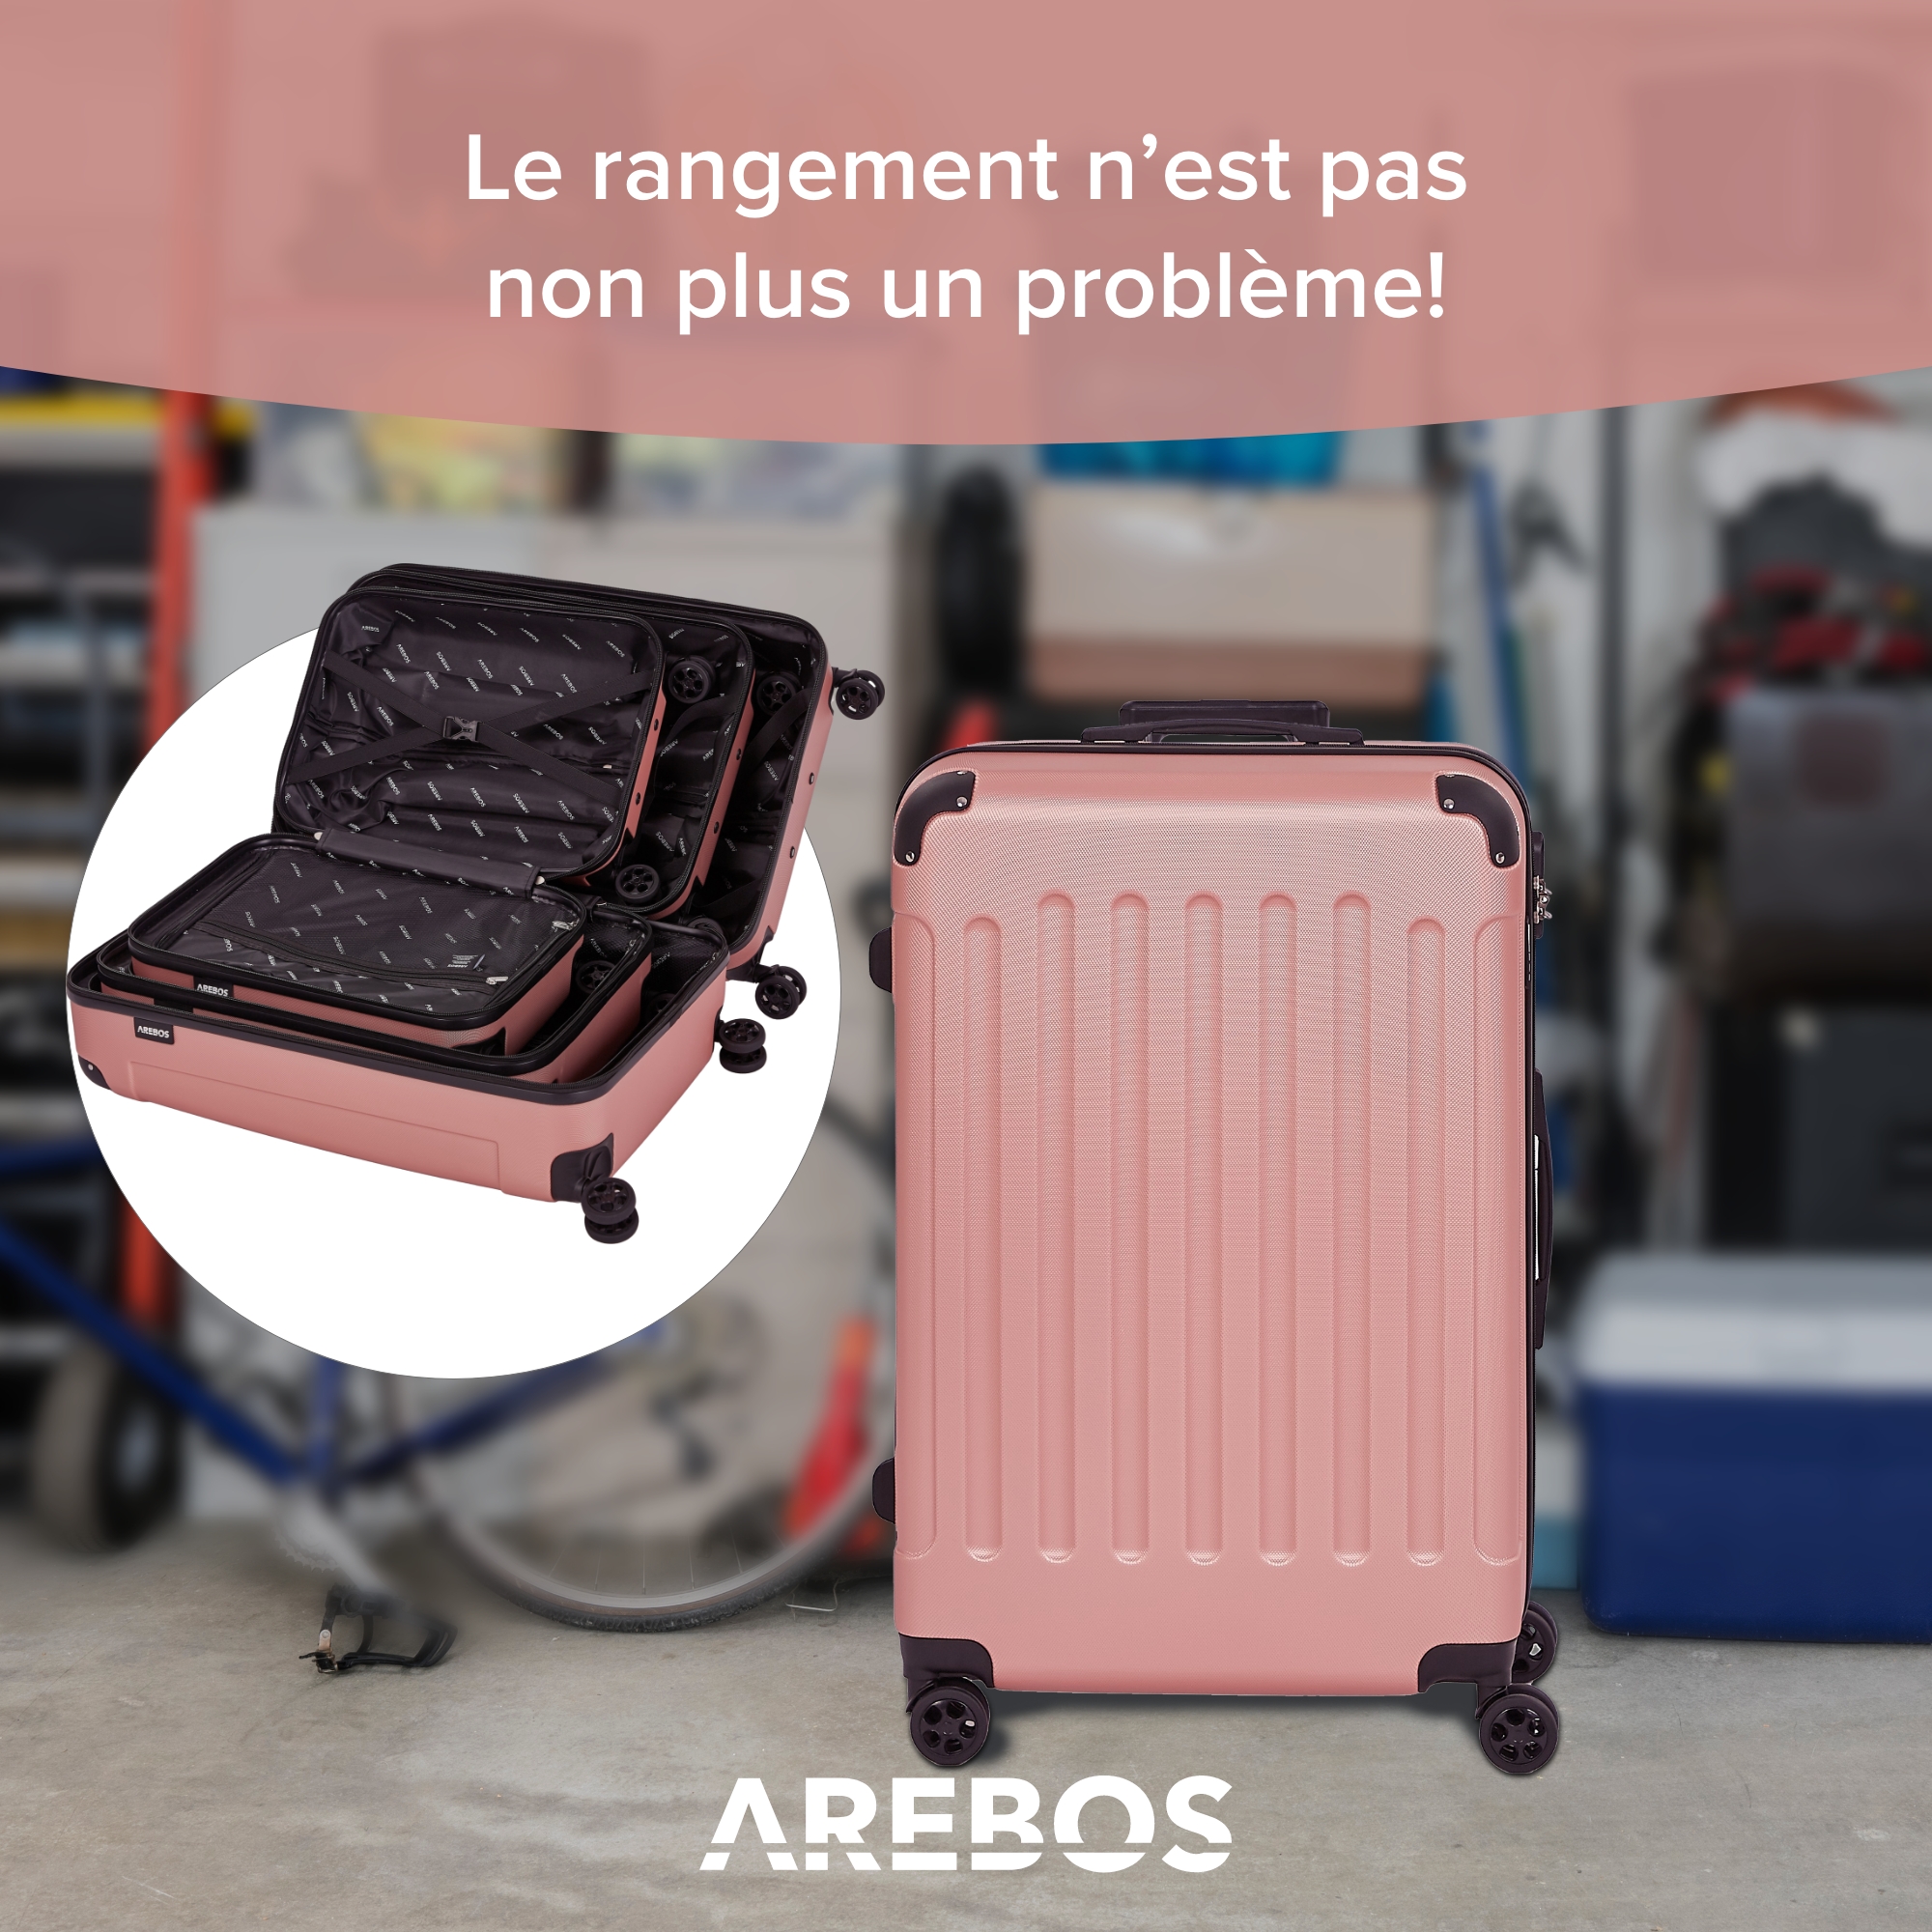 Set de 3 valises de voyage Rosé-or - 4260627421022 - Jardin & Loisirs